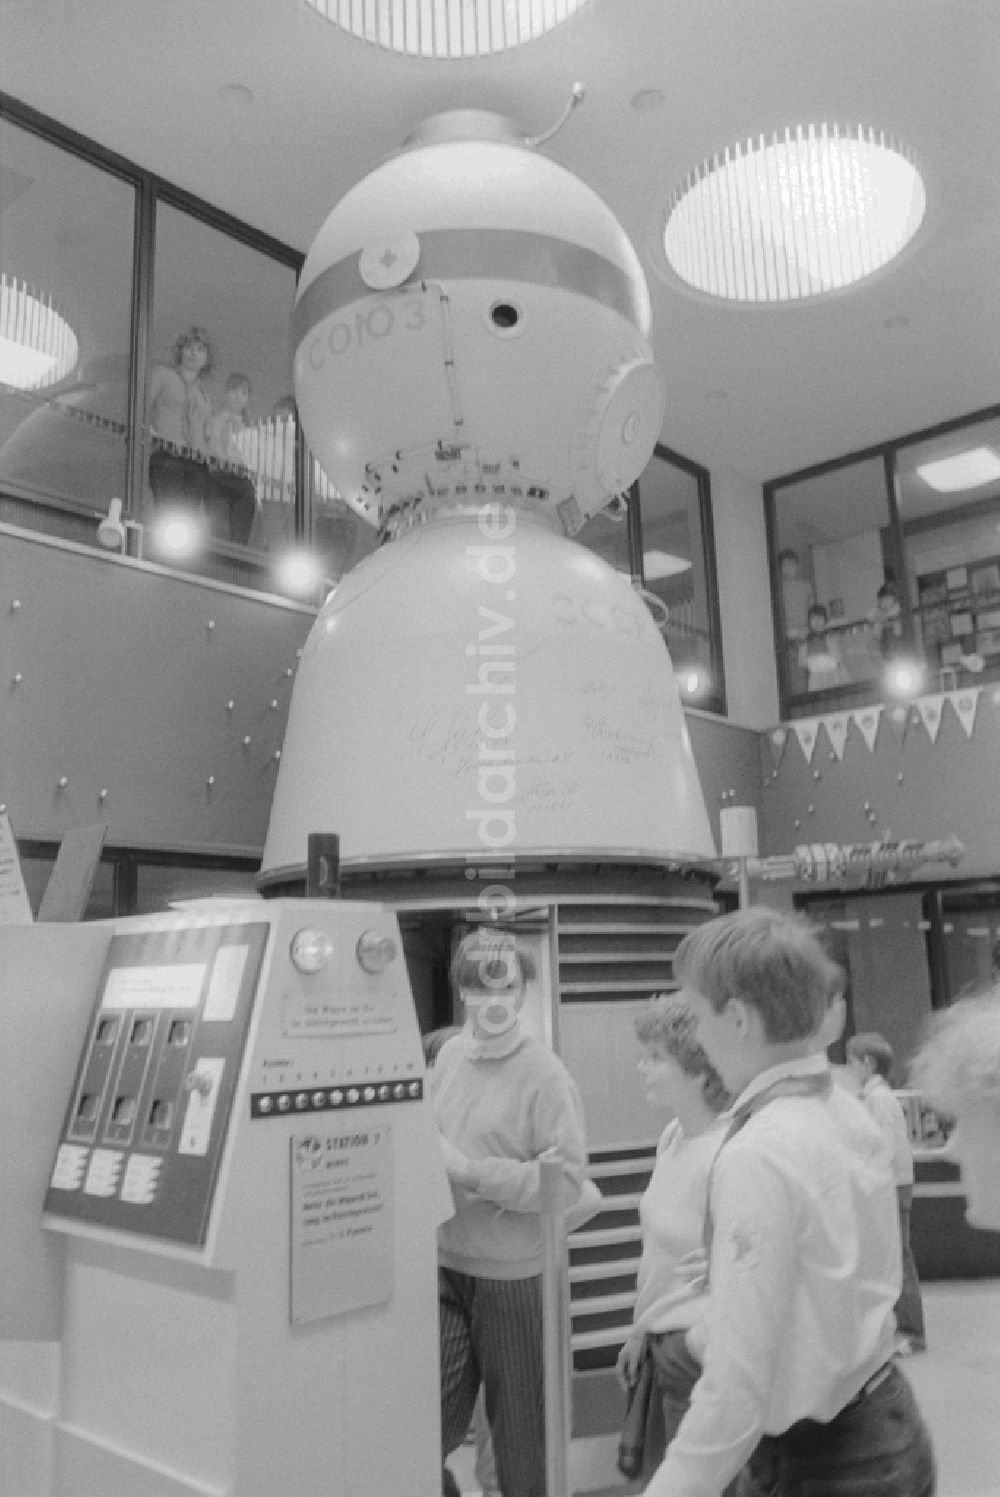 DDR-Fotoarchiv: Berlin - Das Raumfahrtzentrum „Orbitall“ im FEZ Wuhlheide in Berlin, der ehemaligen Hauptstadt der DDR, Deutsche Demokratische Republik